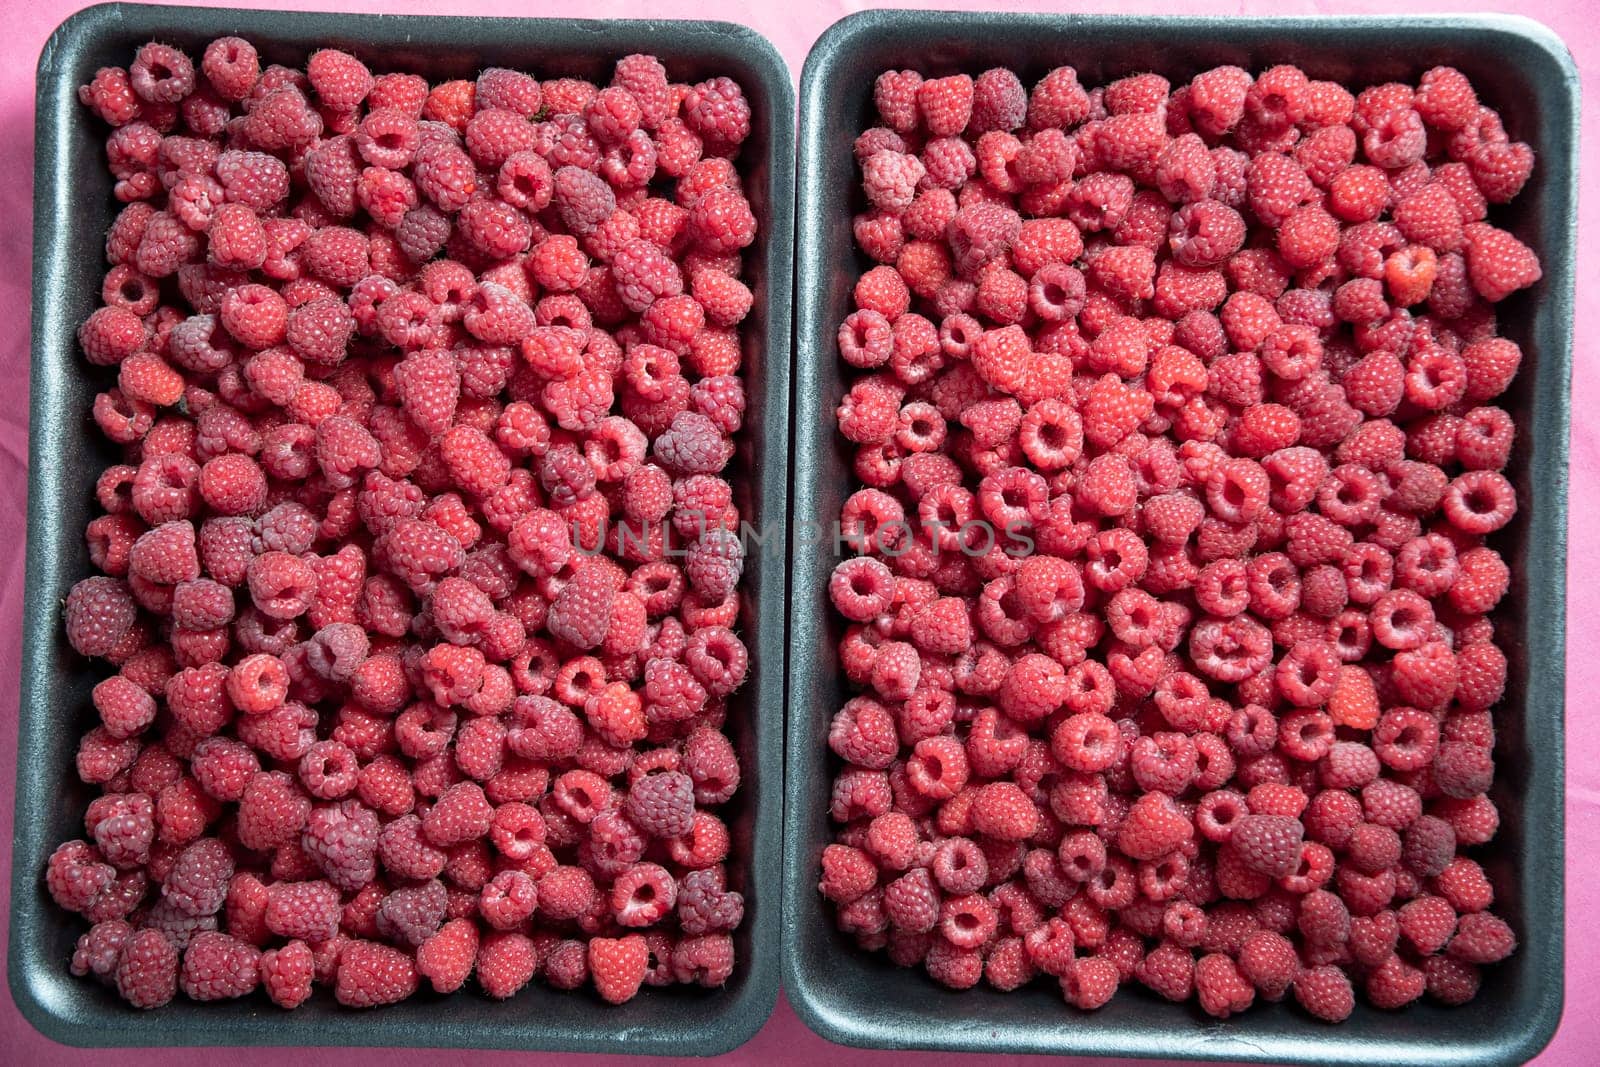 fresh pink raspberries in containers, big summer harvest of berries by KaterinaDalemans